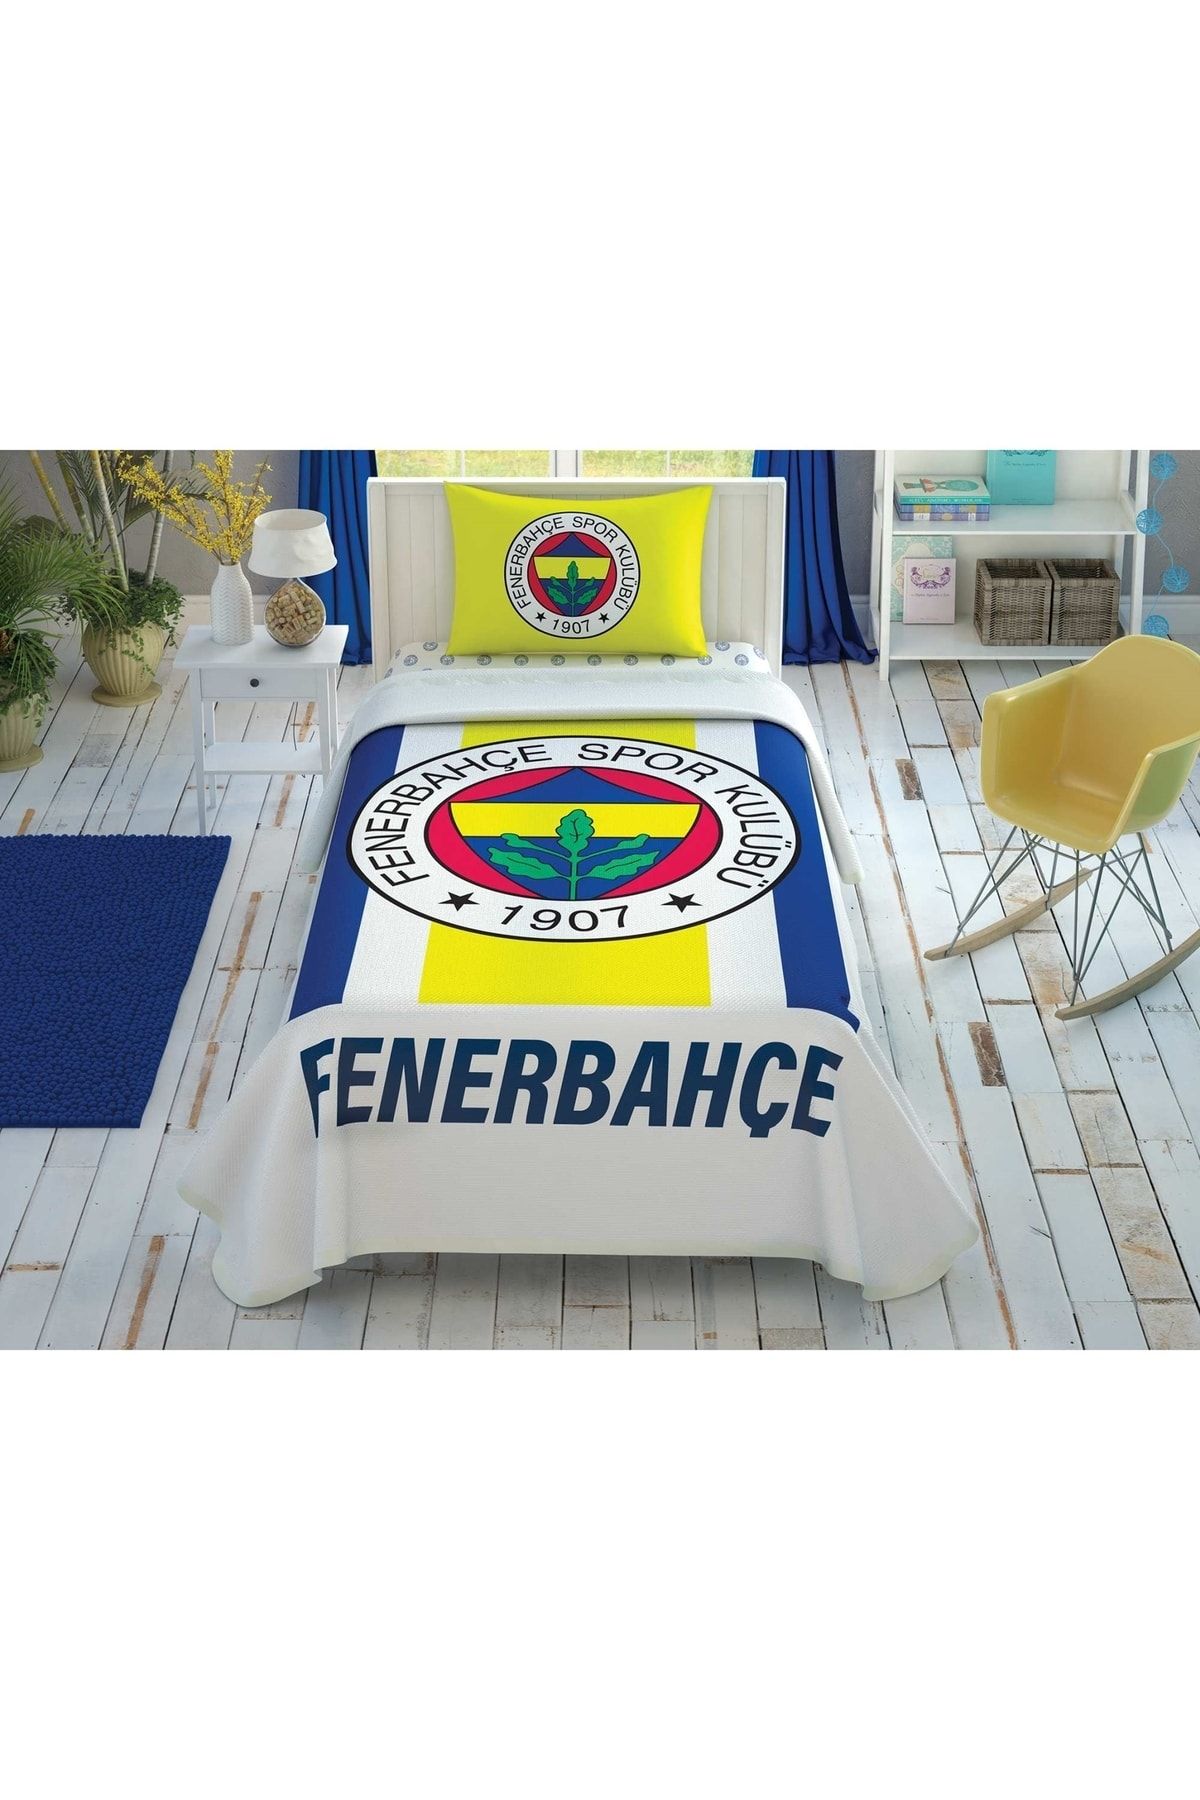 Fenerbahçe Taç Lisanslı Sarı Lacivert % 100 Pamuk Tek Kişilik Pike Takımı 100x200 Cm Çarşaflı